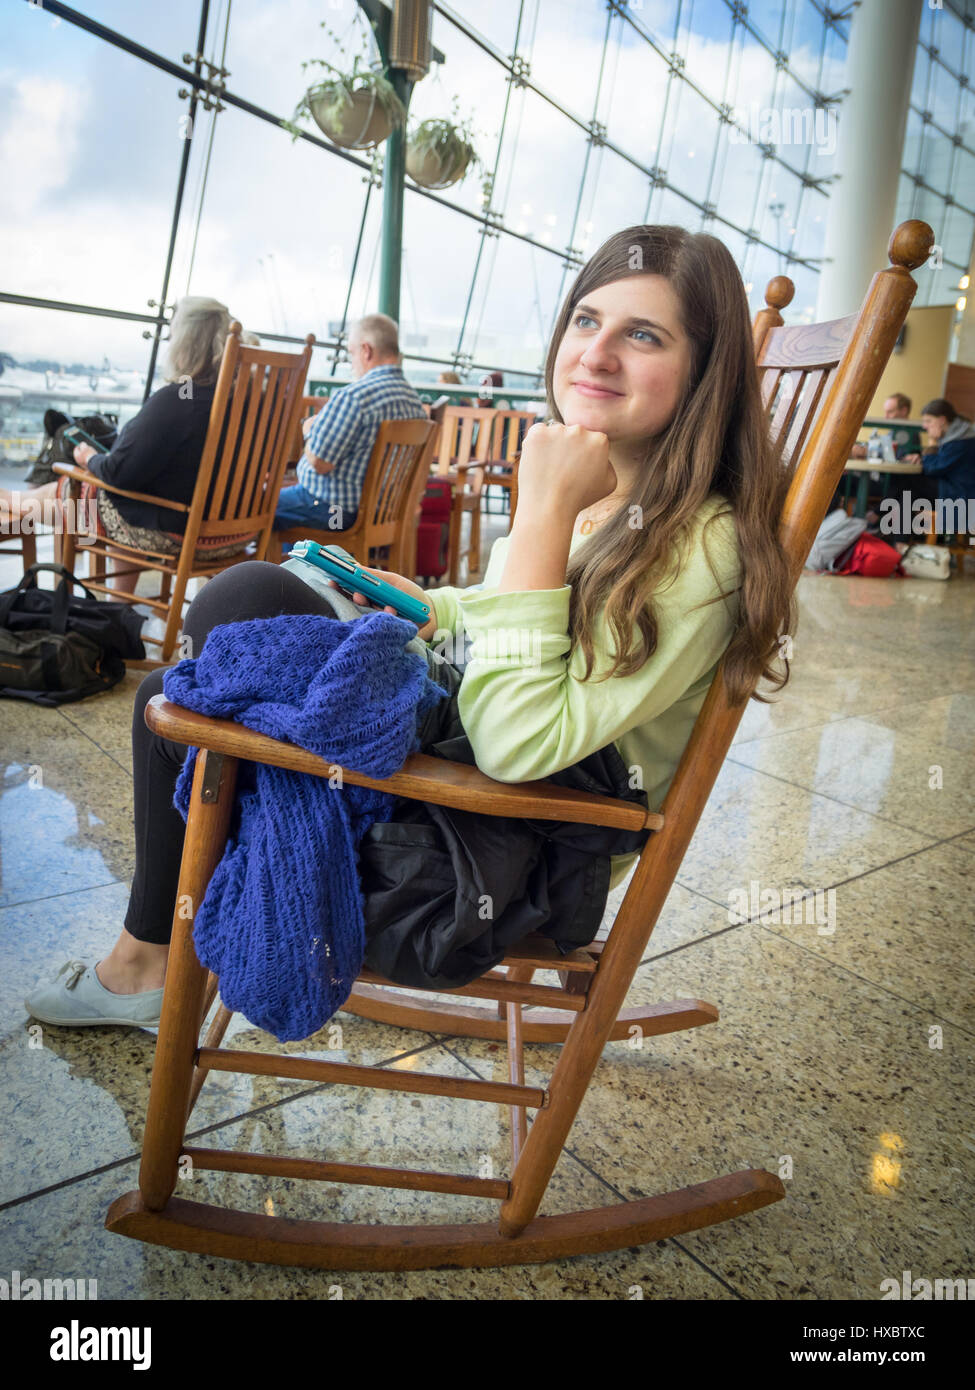 Eine Mädchen sitzt auf einem Schaukelstuhl auf dem pazifischen Markt der zentralen Terminal des Seattle-Tacoma International Airport (Sea-Tac Airport). Stockfoto